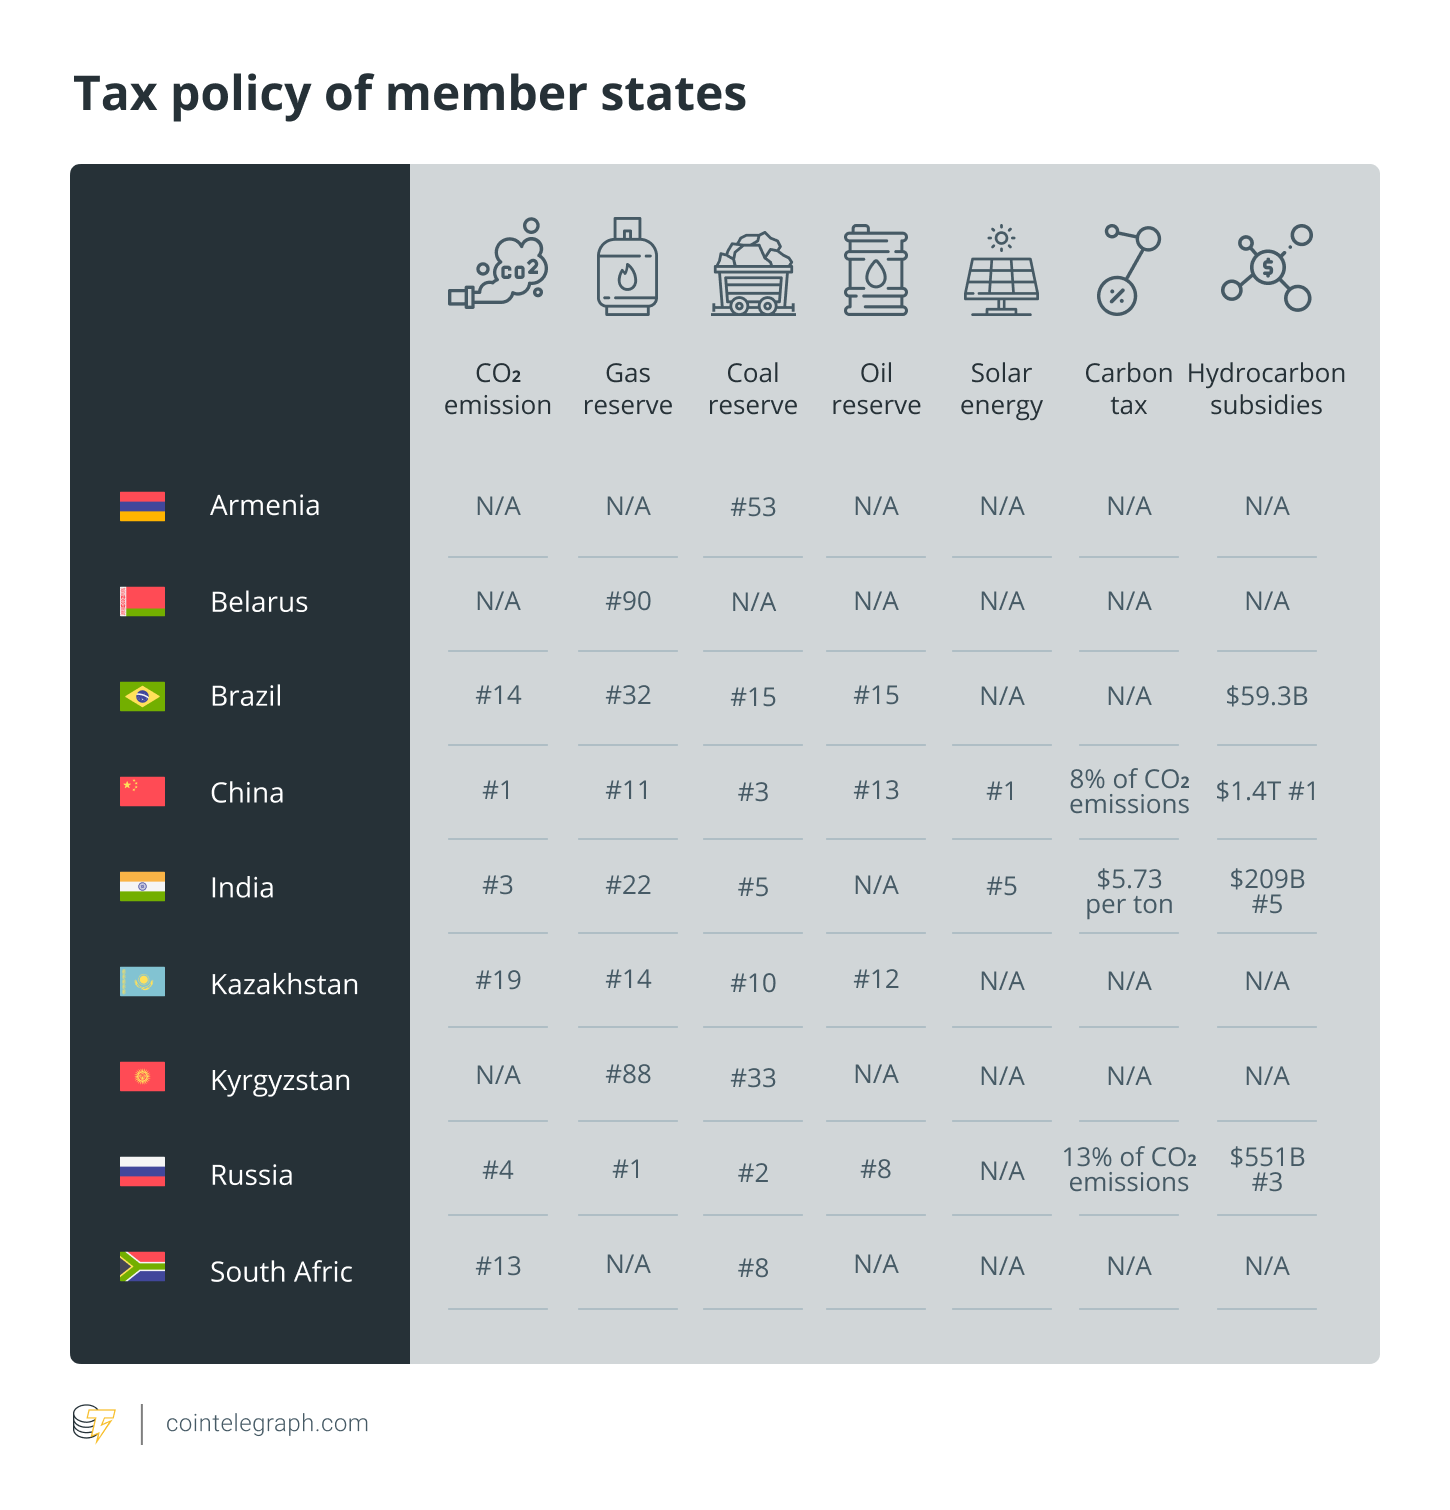 Valstybių narių mokesčių politika